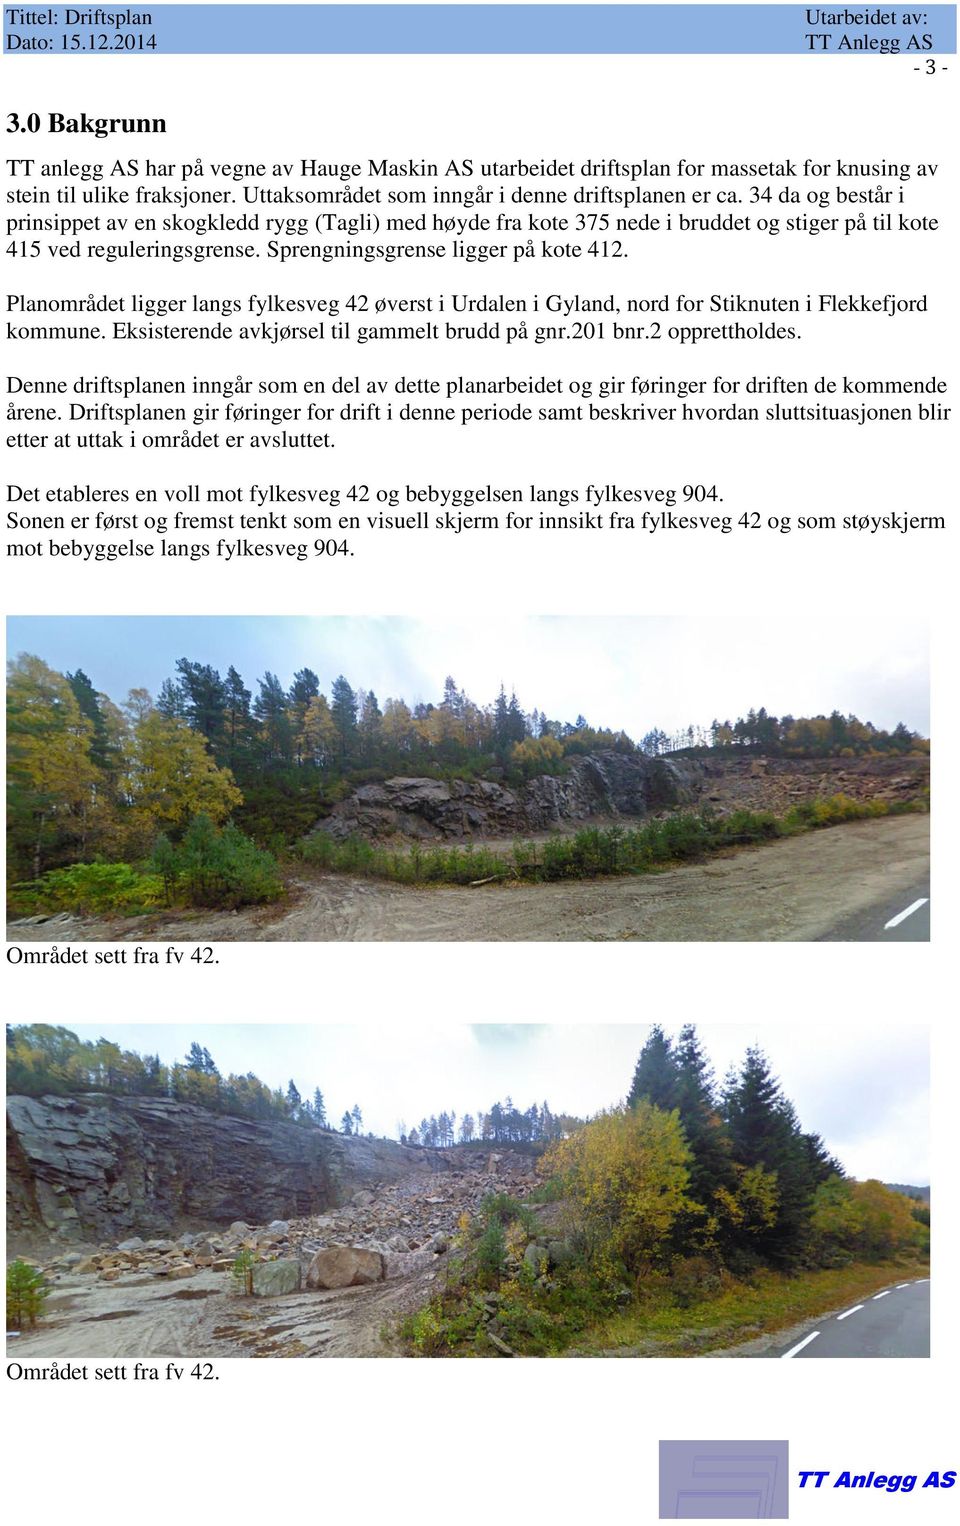 Sprengningsgrense ligger på kote 412. Planområdet ligger langs fylkesveg 42 øverst i Urdalen i Gyland, nord for Stiknuten i Flekkefjord kommune. Eksisterende avkjørsel til gammelt brudd på gnr.